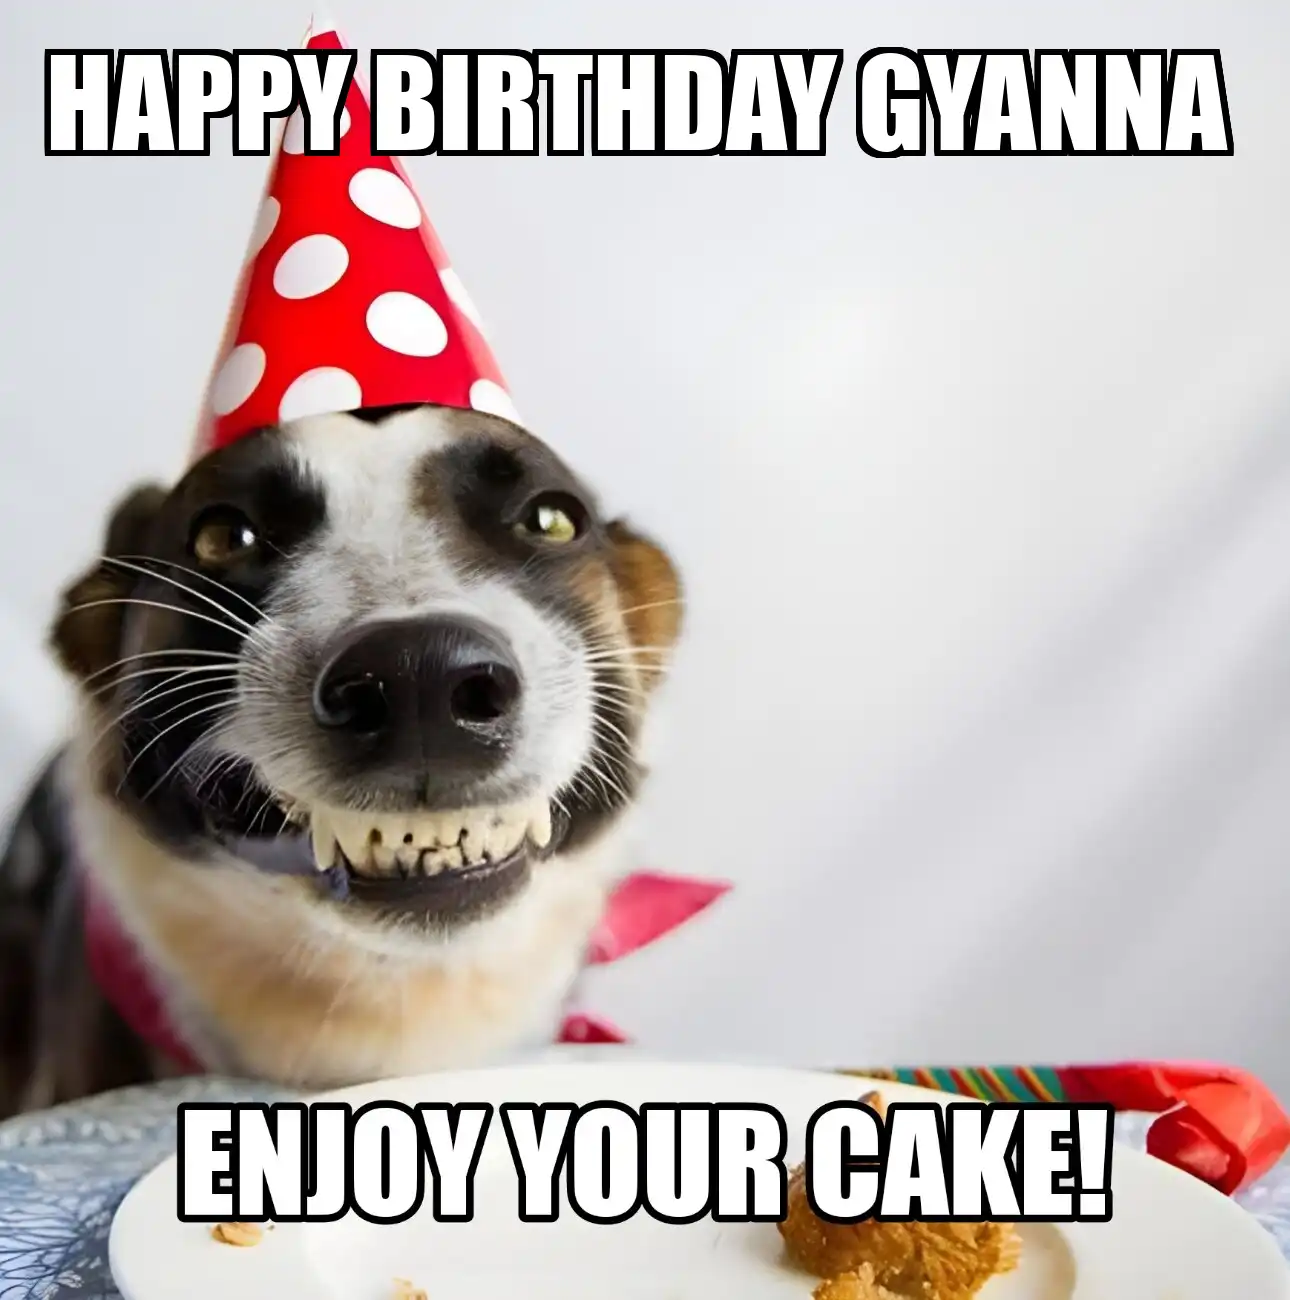 Happy Birthday Gyanna Enjoy Your Cake Dog Meme